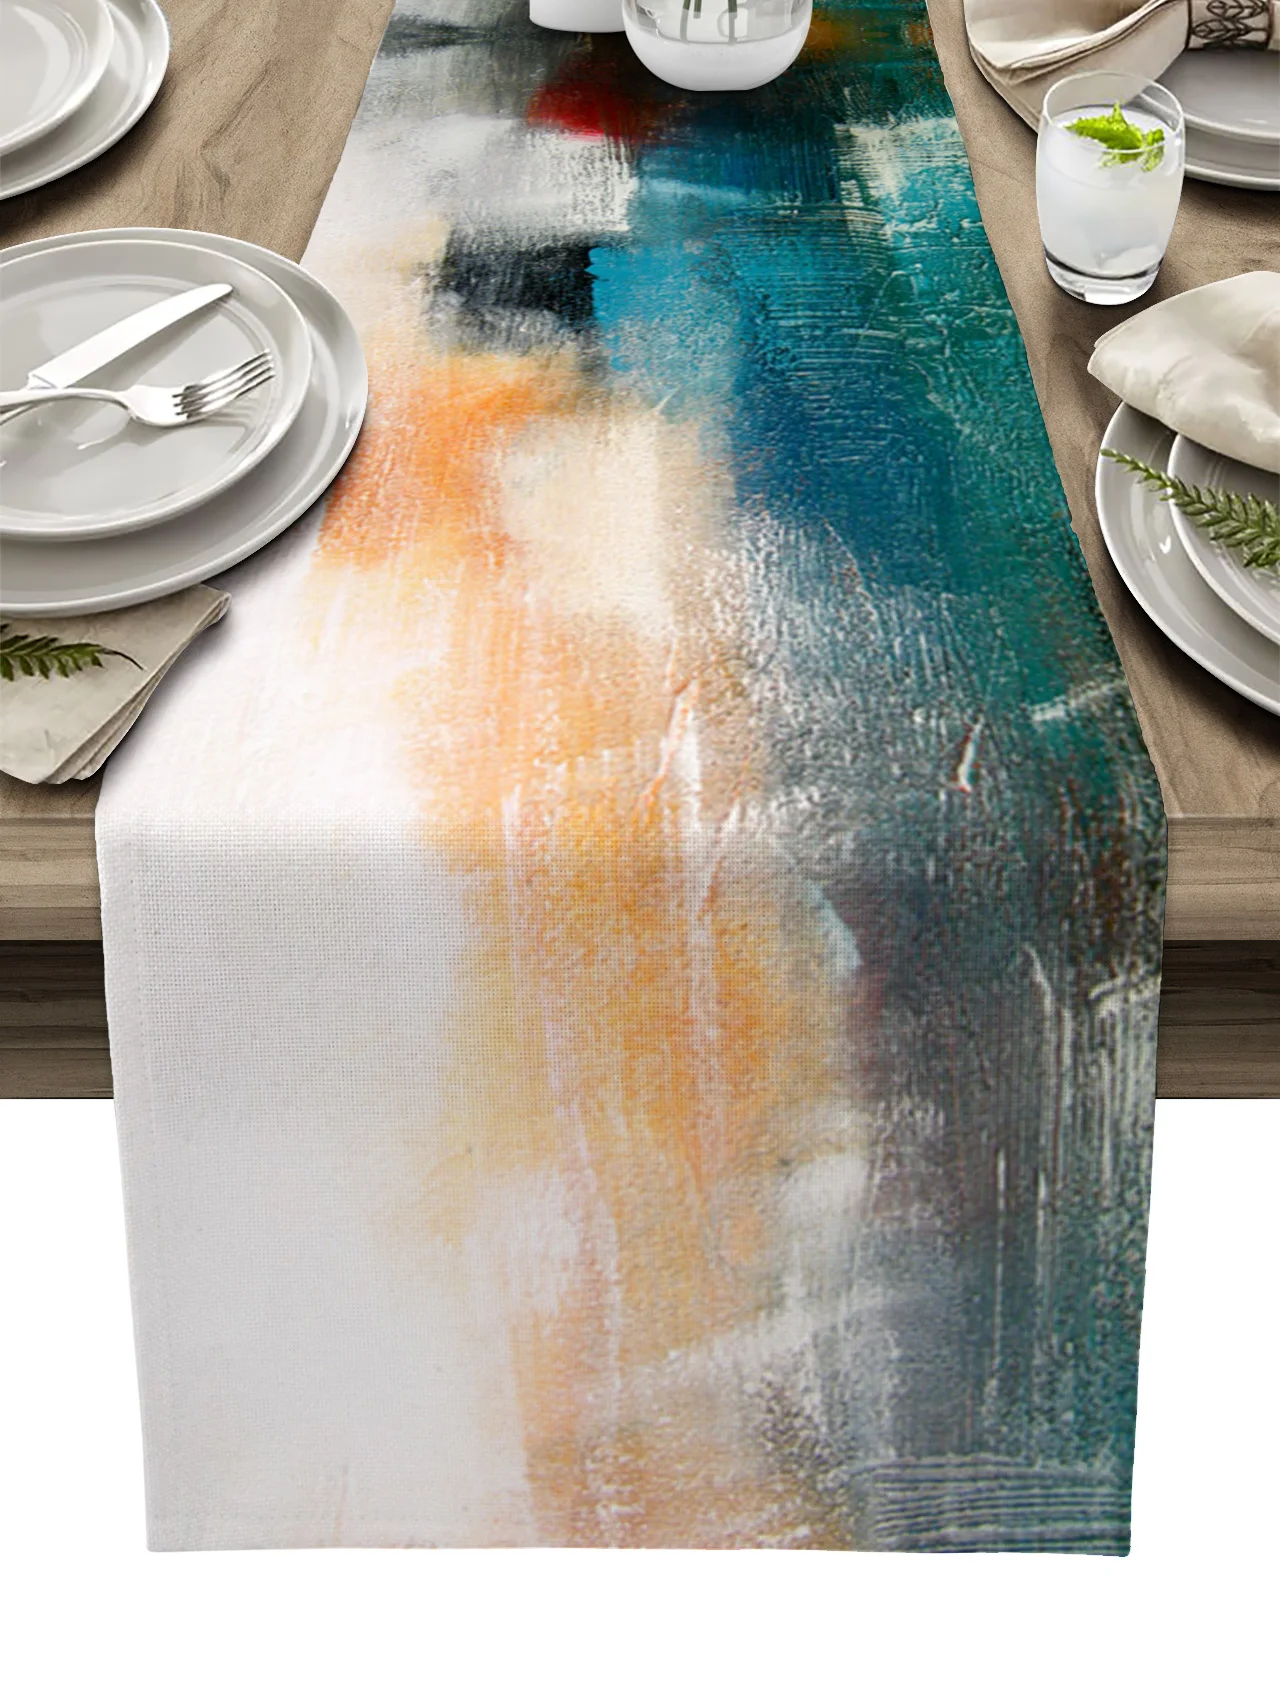 

Картина граффити масляная живопись стильная скатерть для стола Свадебная вечеринка обеденный стол Обложка ткань салфетка под тарелку дома...